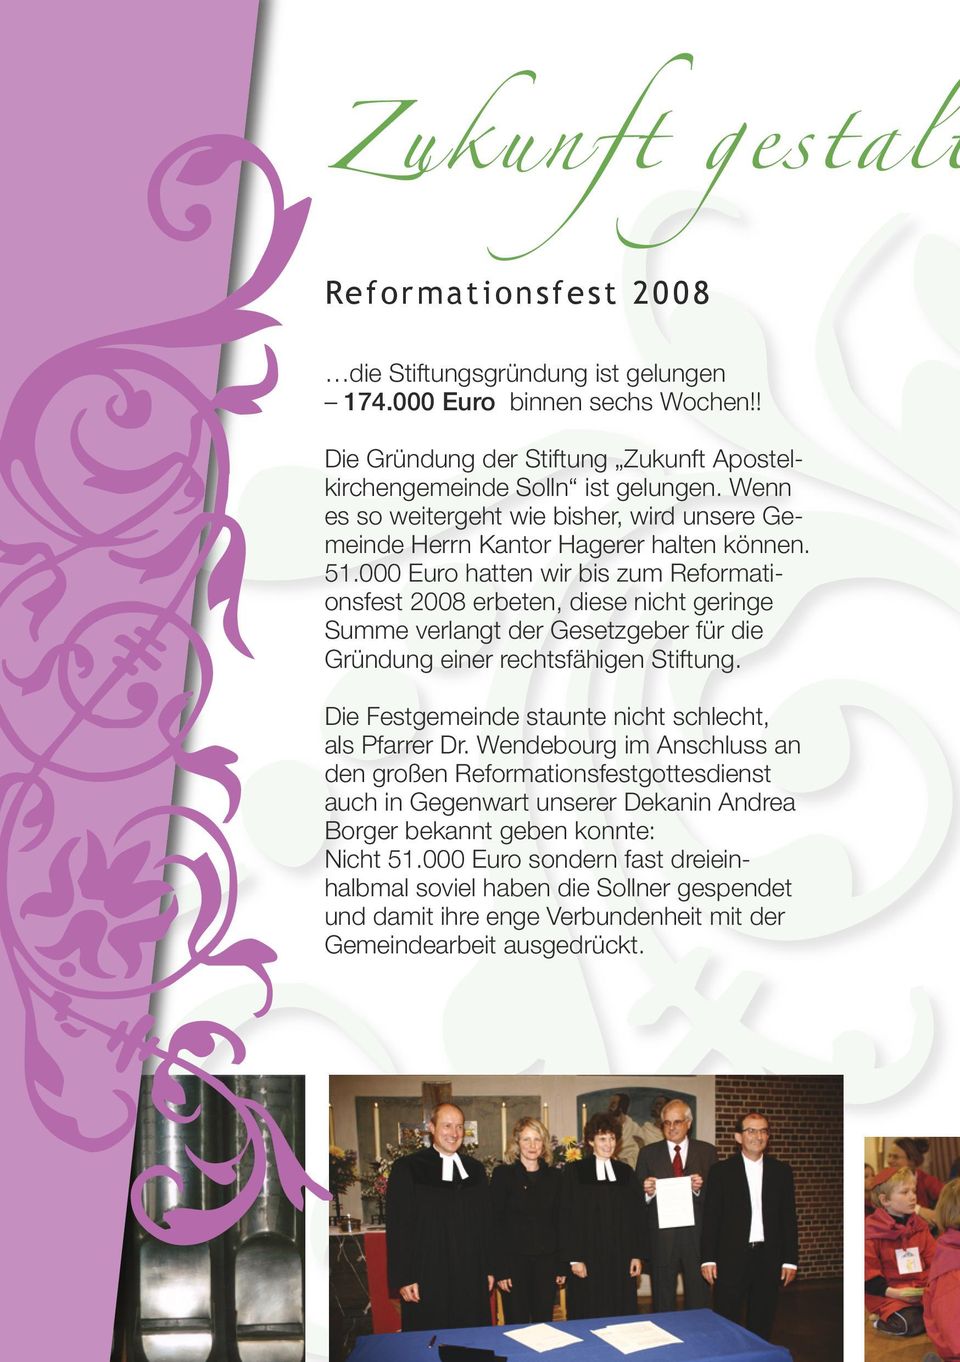 000 Euro hatten wir bis zum Reformationsfest 2008 erbeten, diese nicht geringe Summe verlangt der Gesetzgeber für die Gründung einer rechtsfähigen Stiftung.